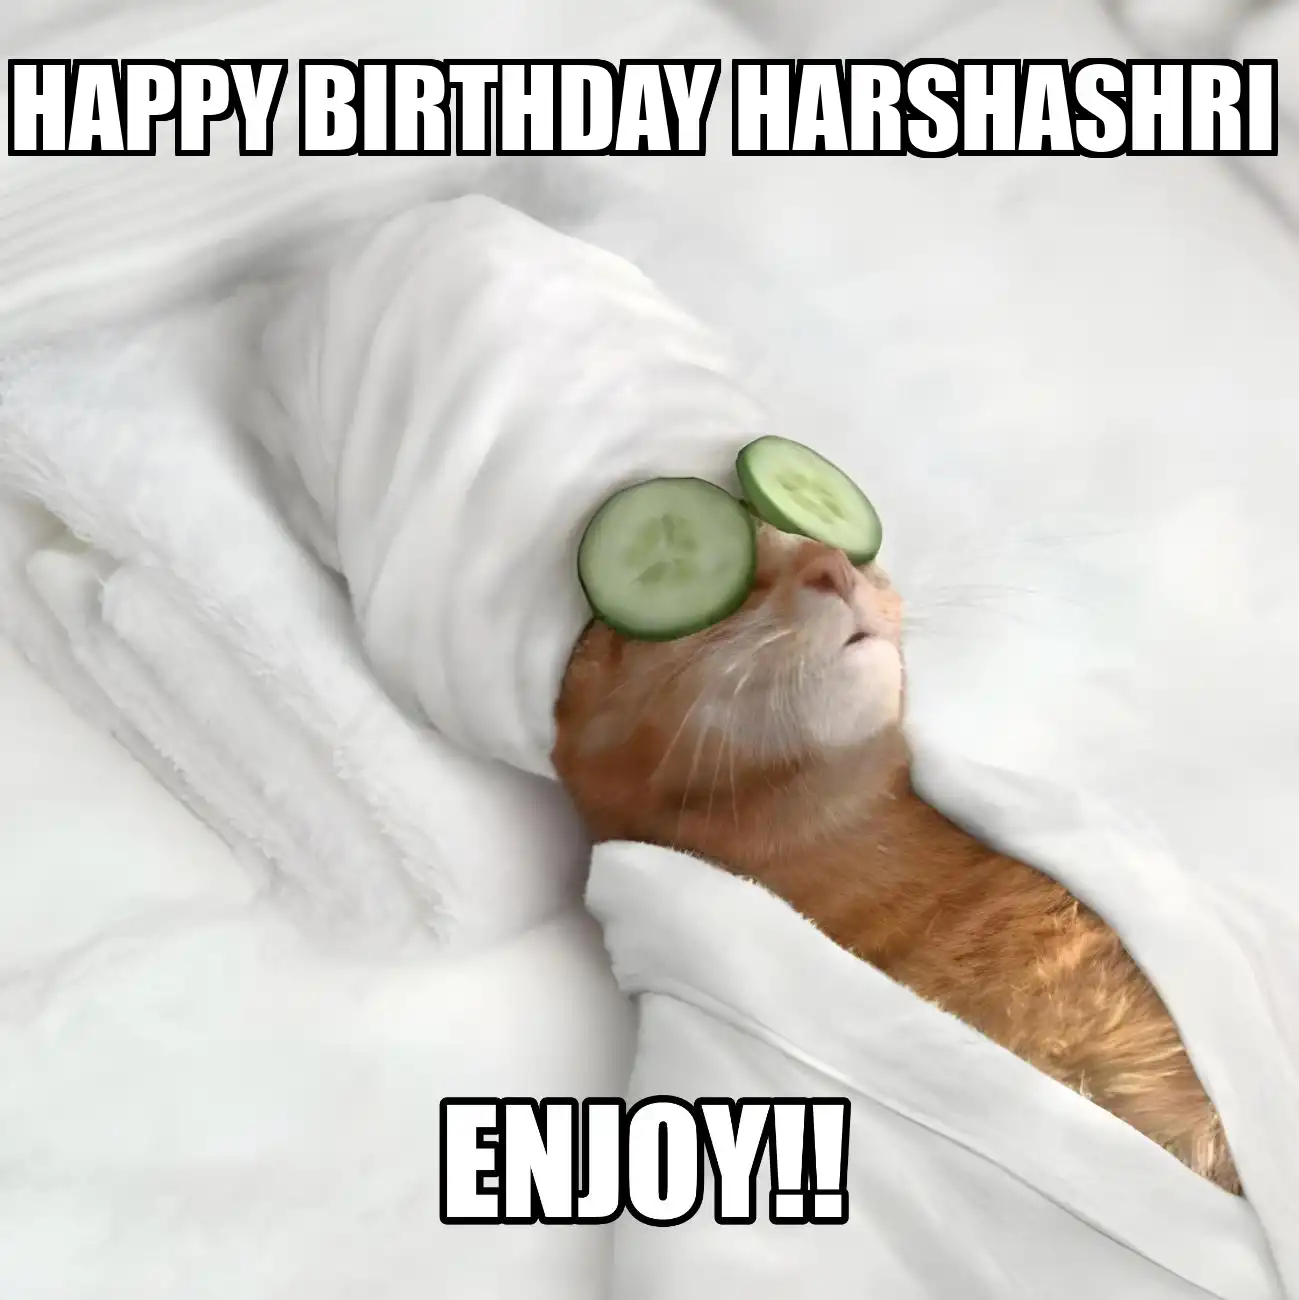 Happy Birthday Harshashri Enjoy Cat Meme